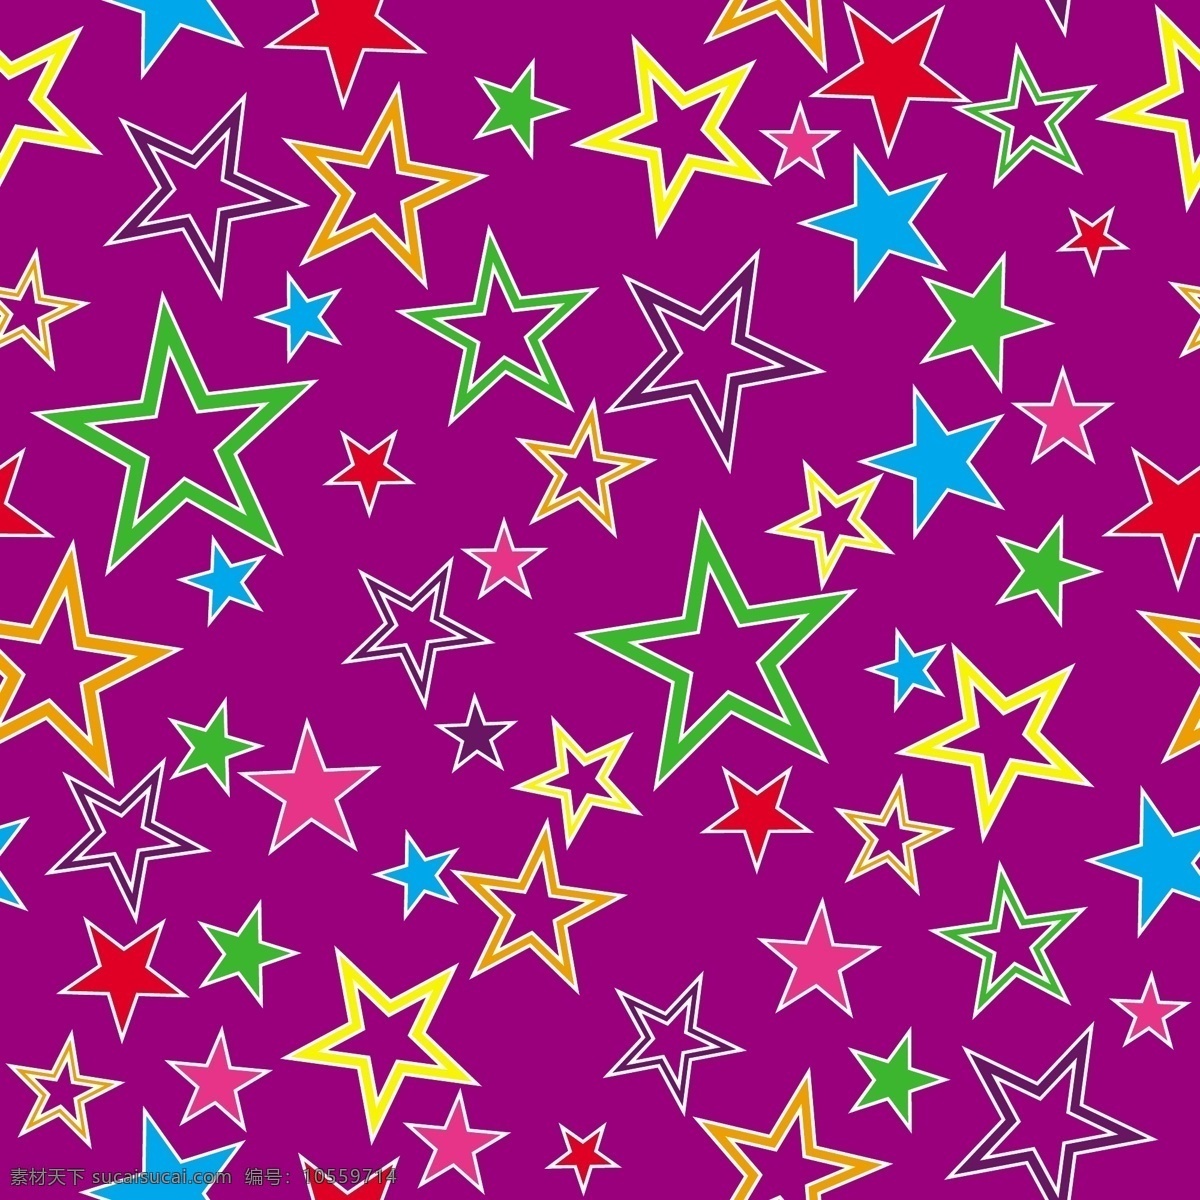 矢量 缤纷 花纹 实用 背景 可爱 连续背景 矢量素材 五角星 星星 矢量图 花纹花边